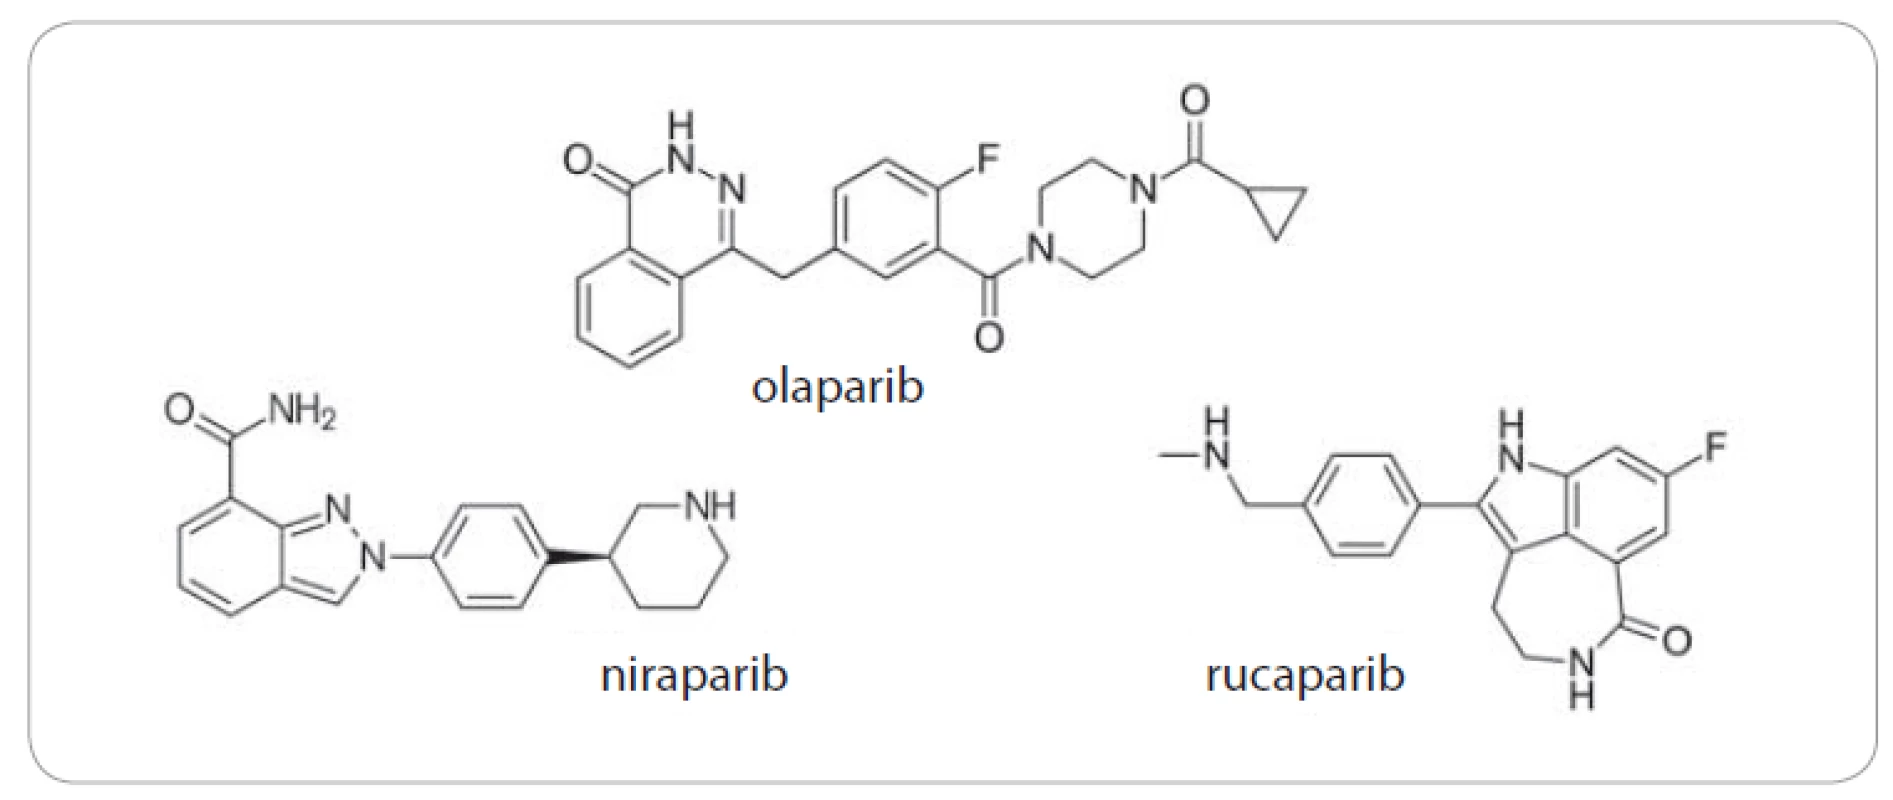 Chemické struktury olaparibu, niraparibu a rucaparibu.